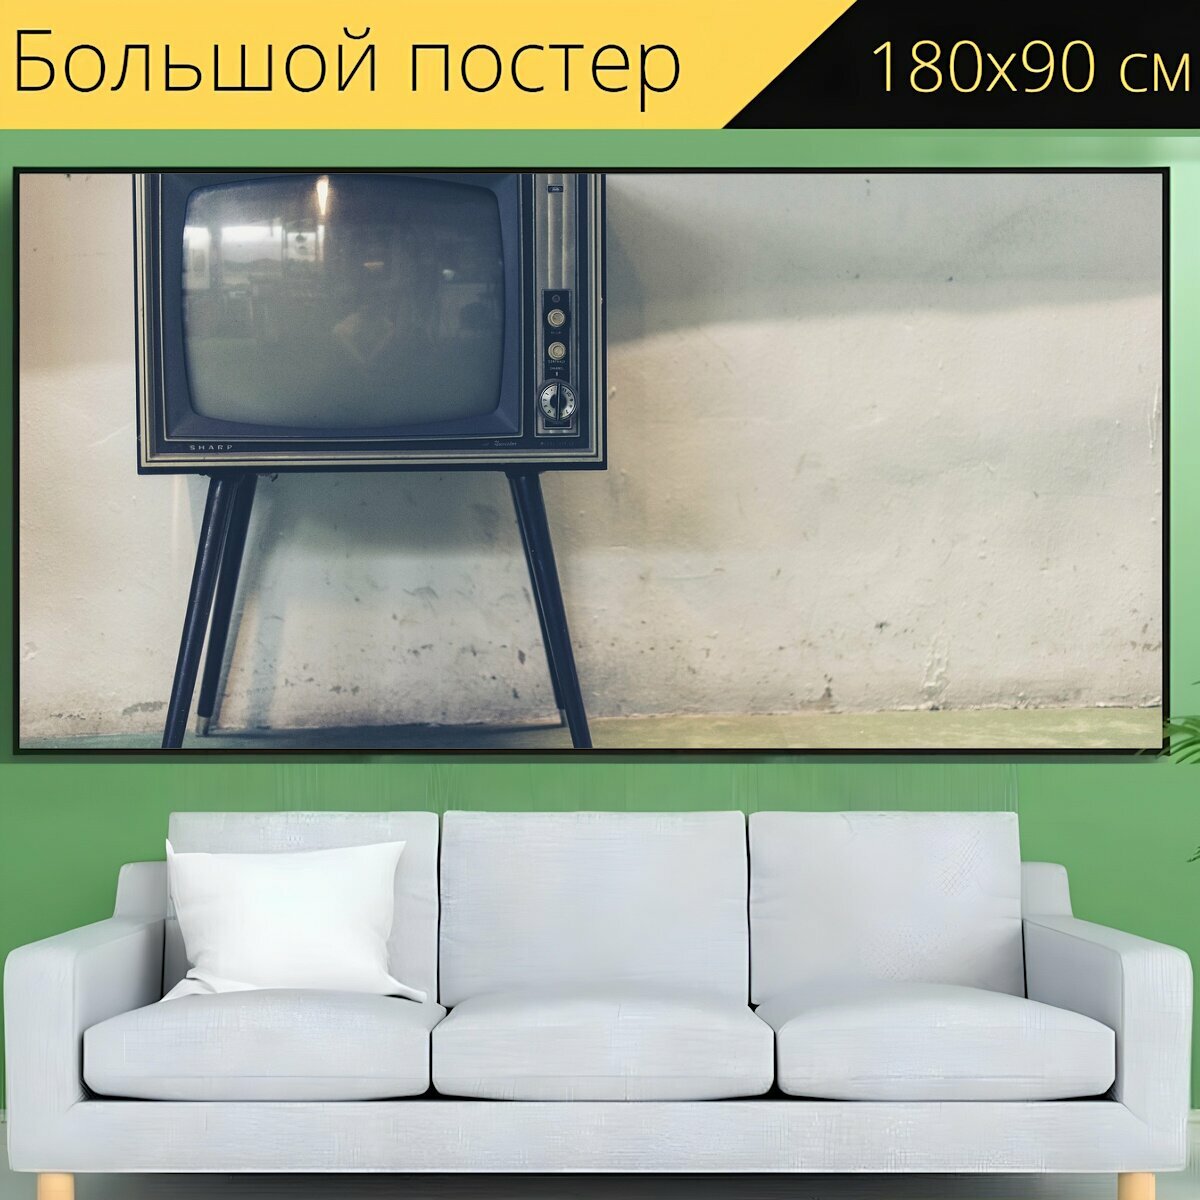 Большой постер "Телевизор, телевидение, ретро" 180 x 90 см. для интерьера